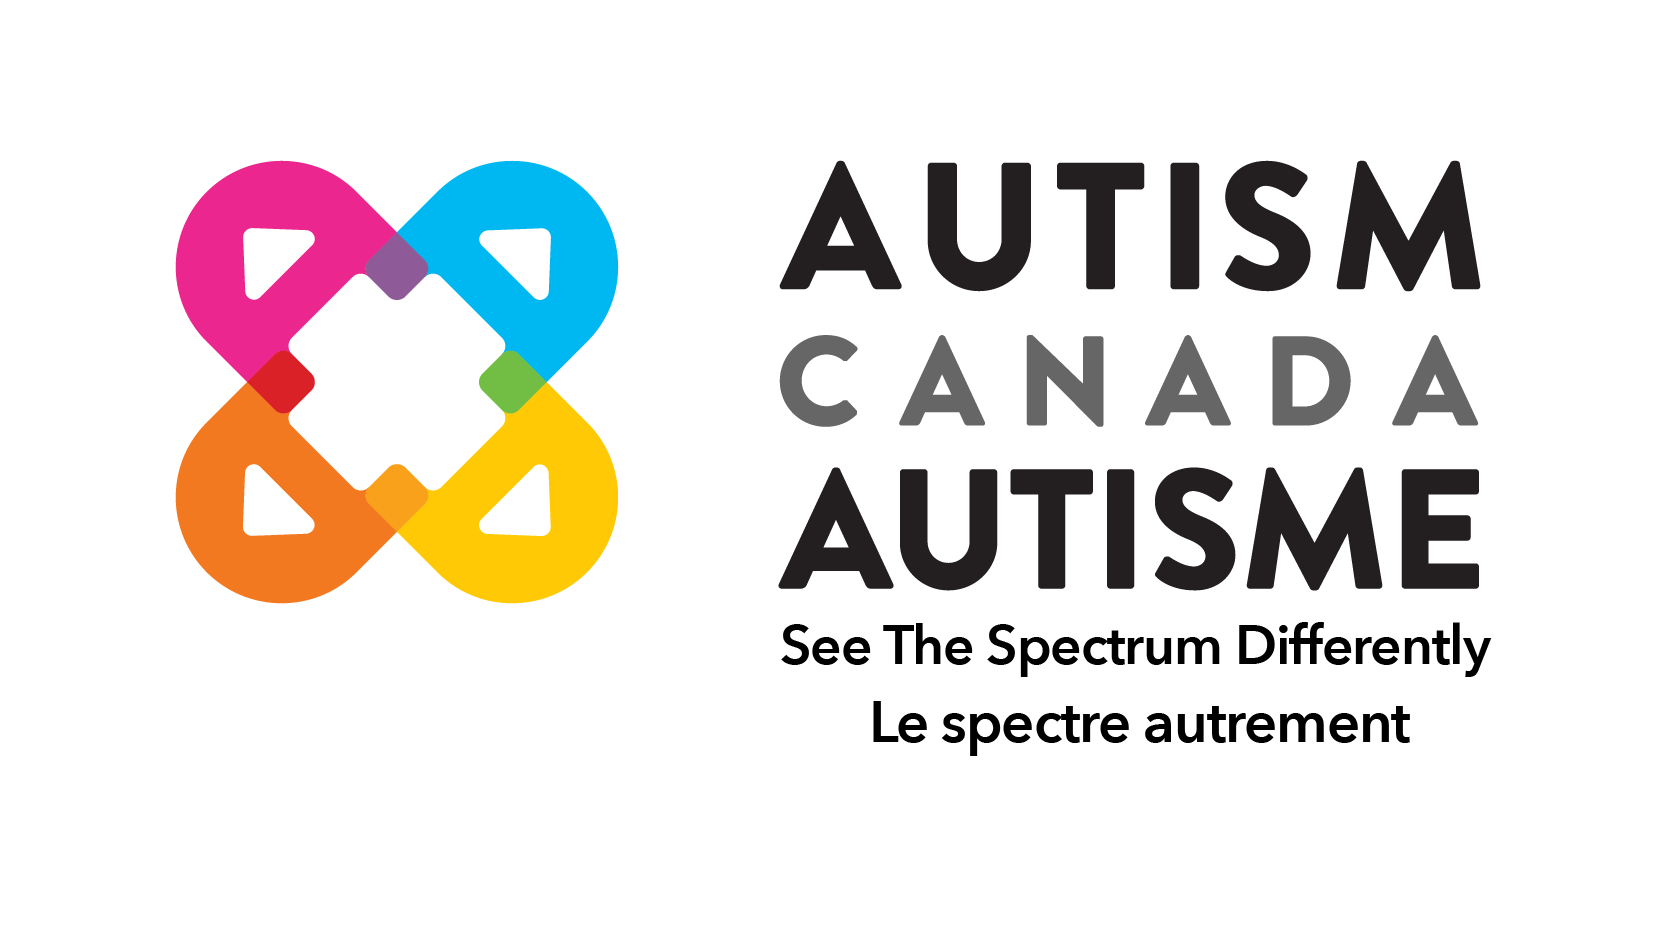 autismcanada.org